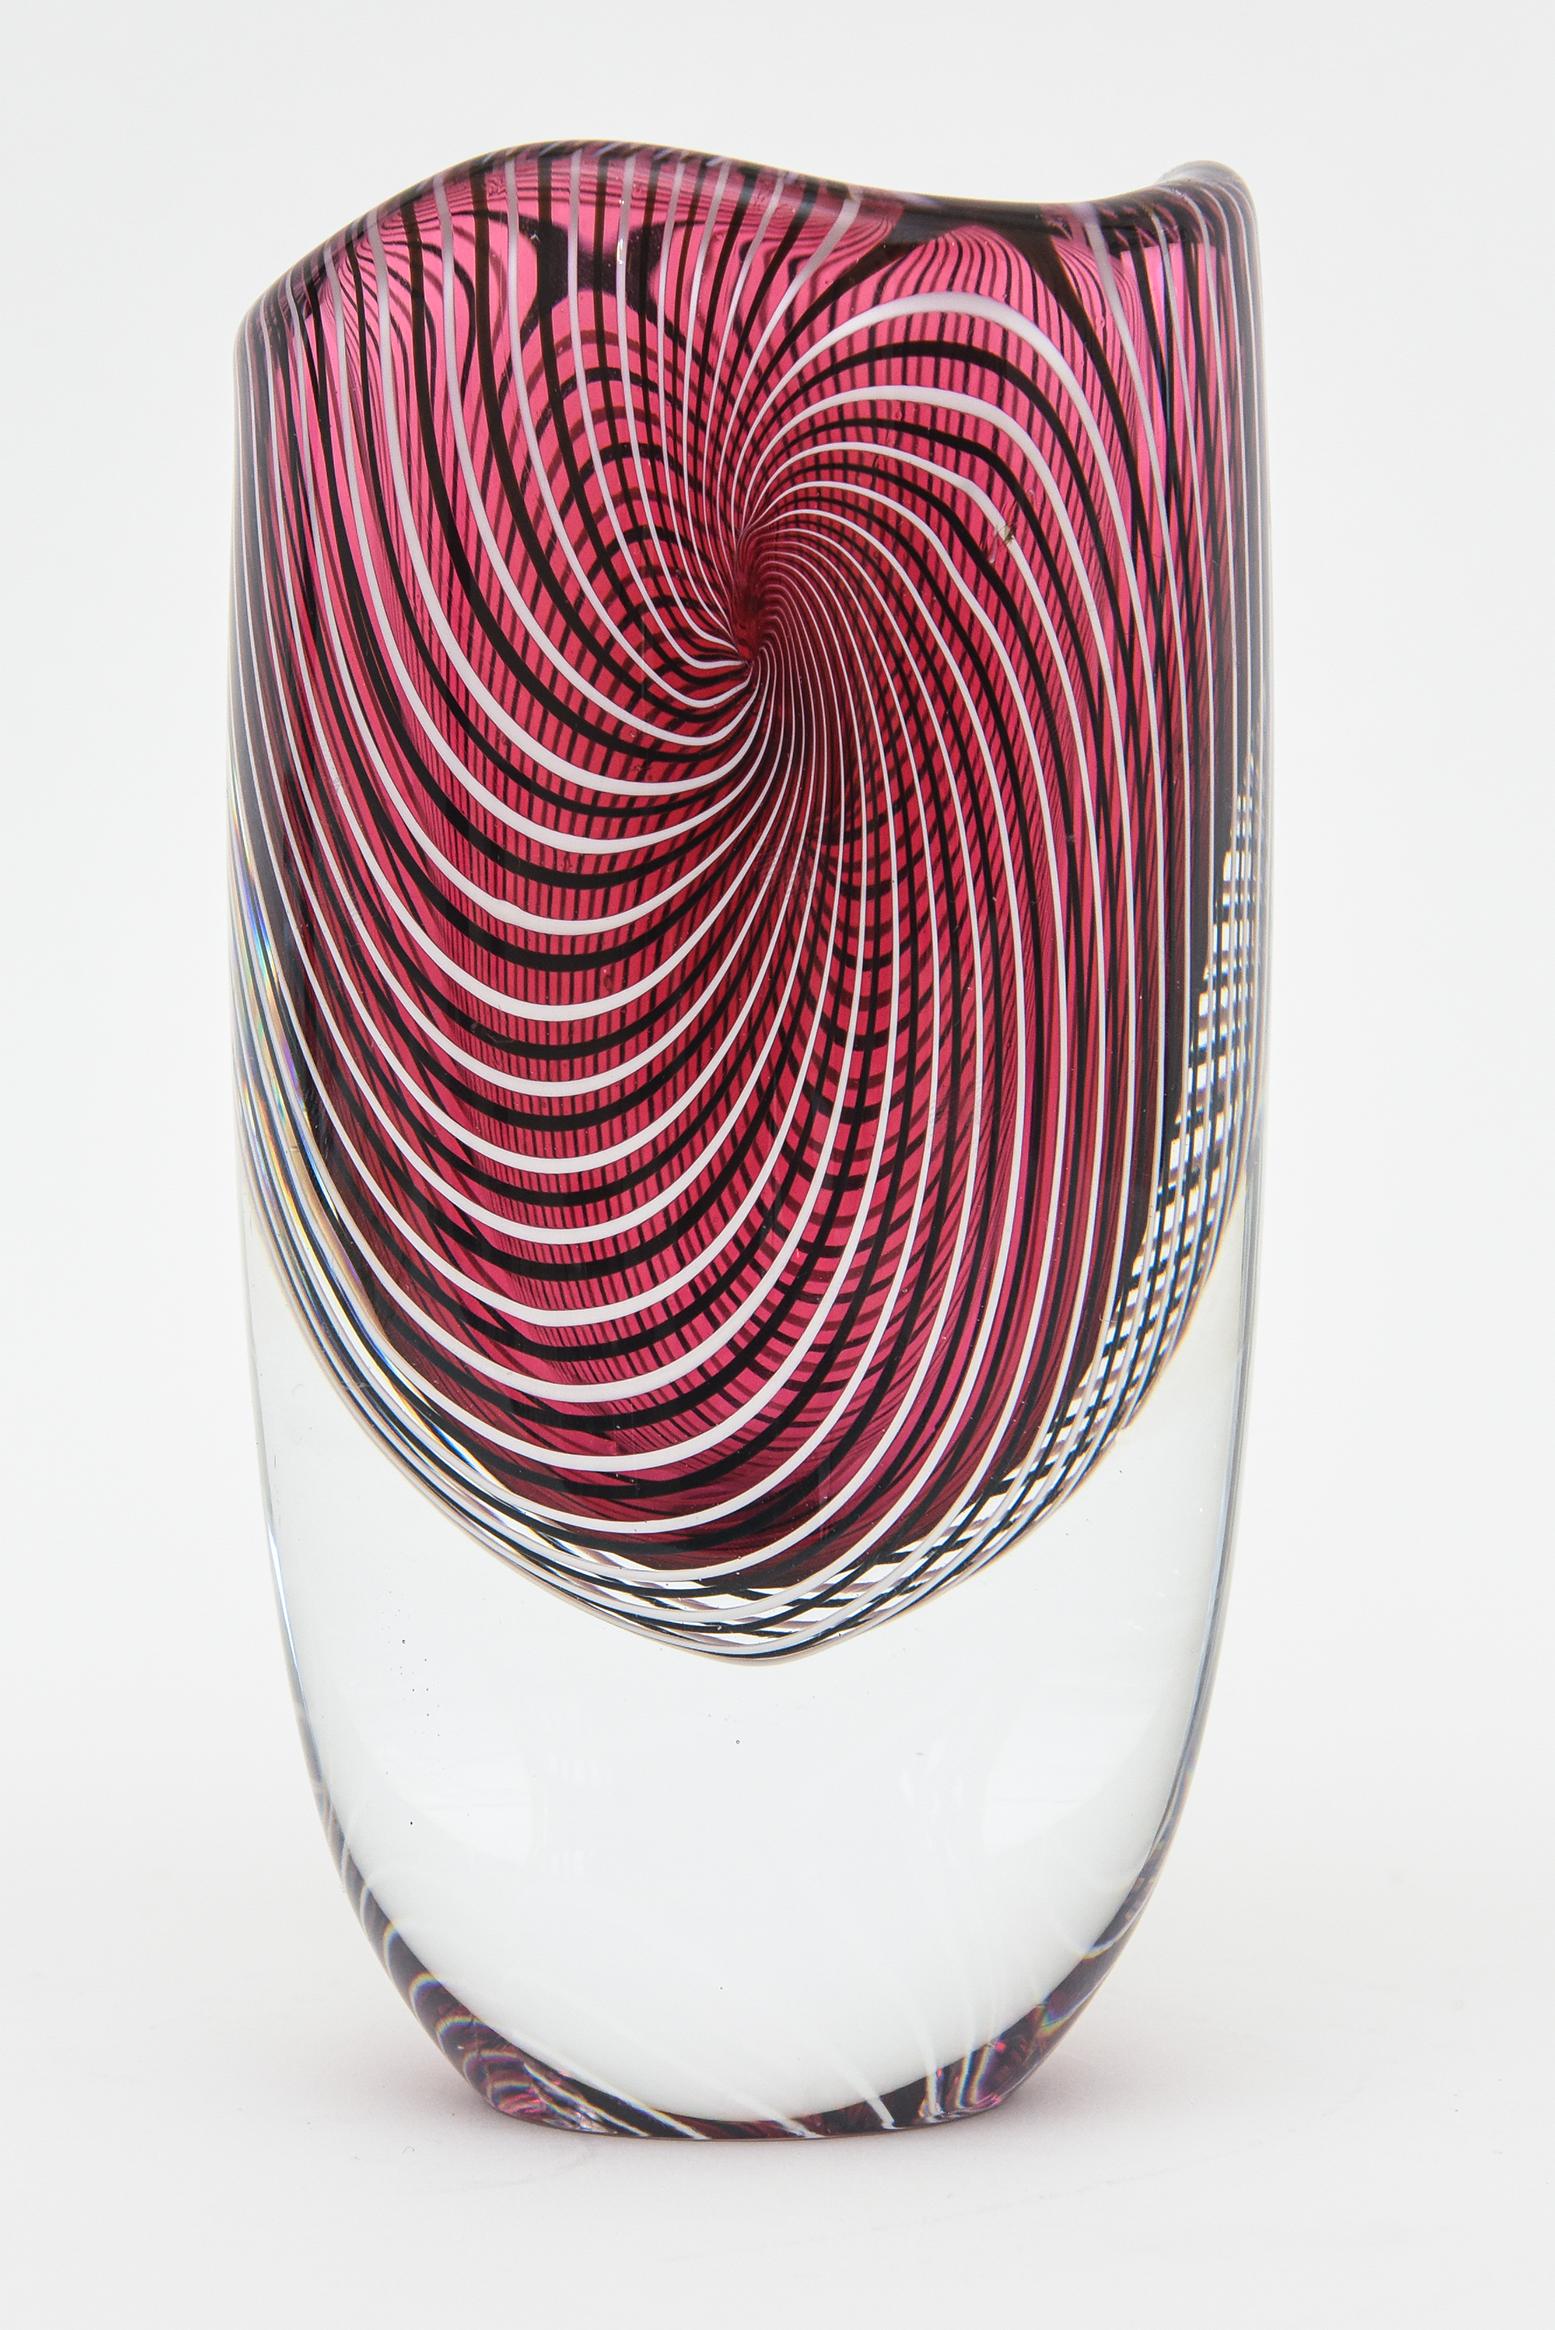 Ce magnifique vase Murano vintage de Seguso Viro a un poids important et est entouré d'un motif en spirale de rayures continues. Le haut est légèrement festonné.
L'étiquette d'origine est intacte et indique 